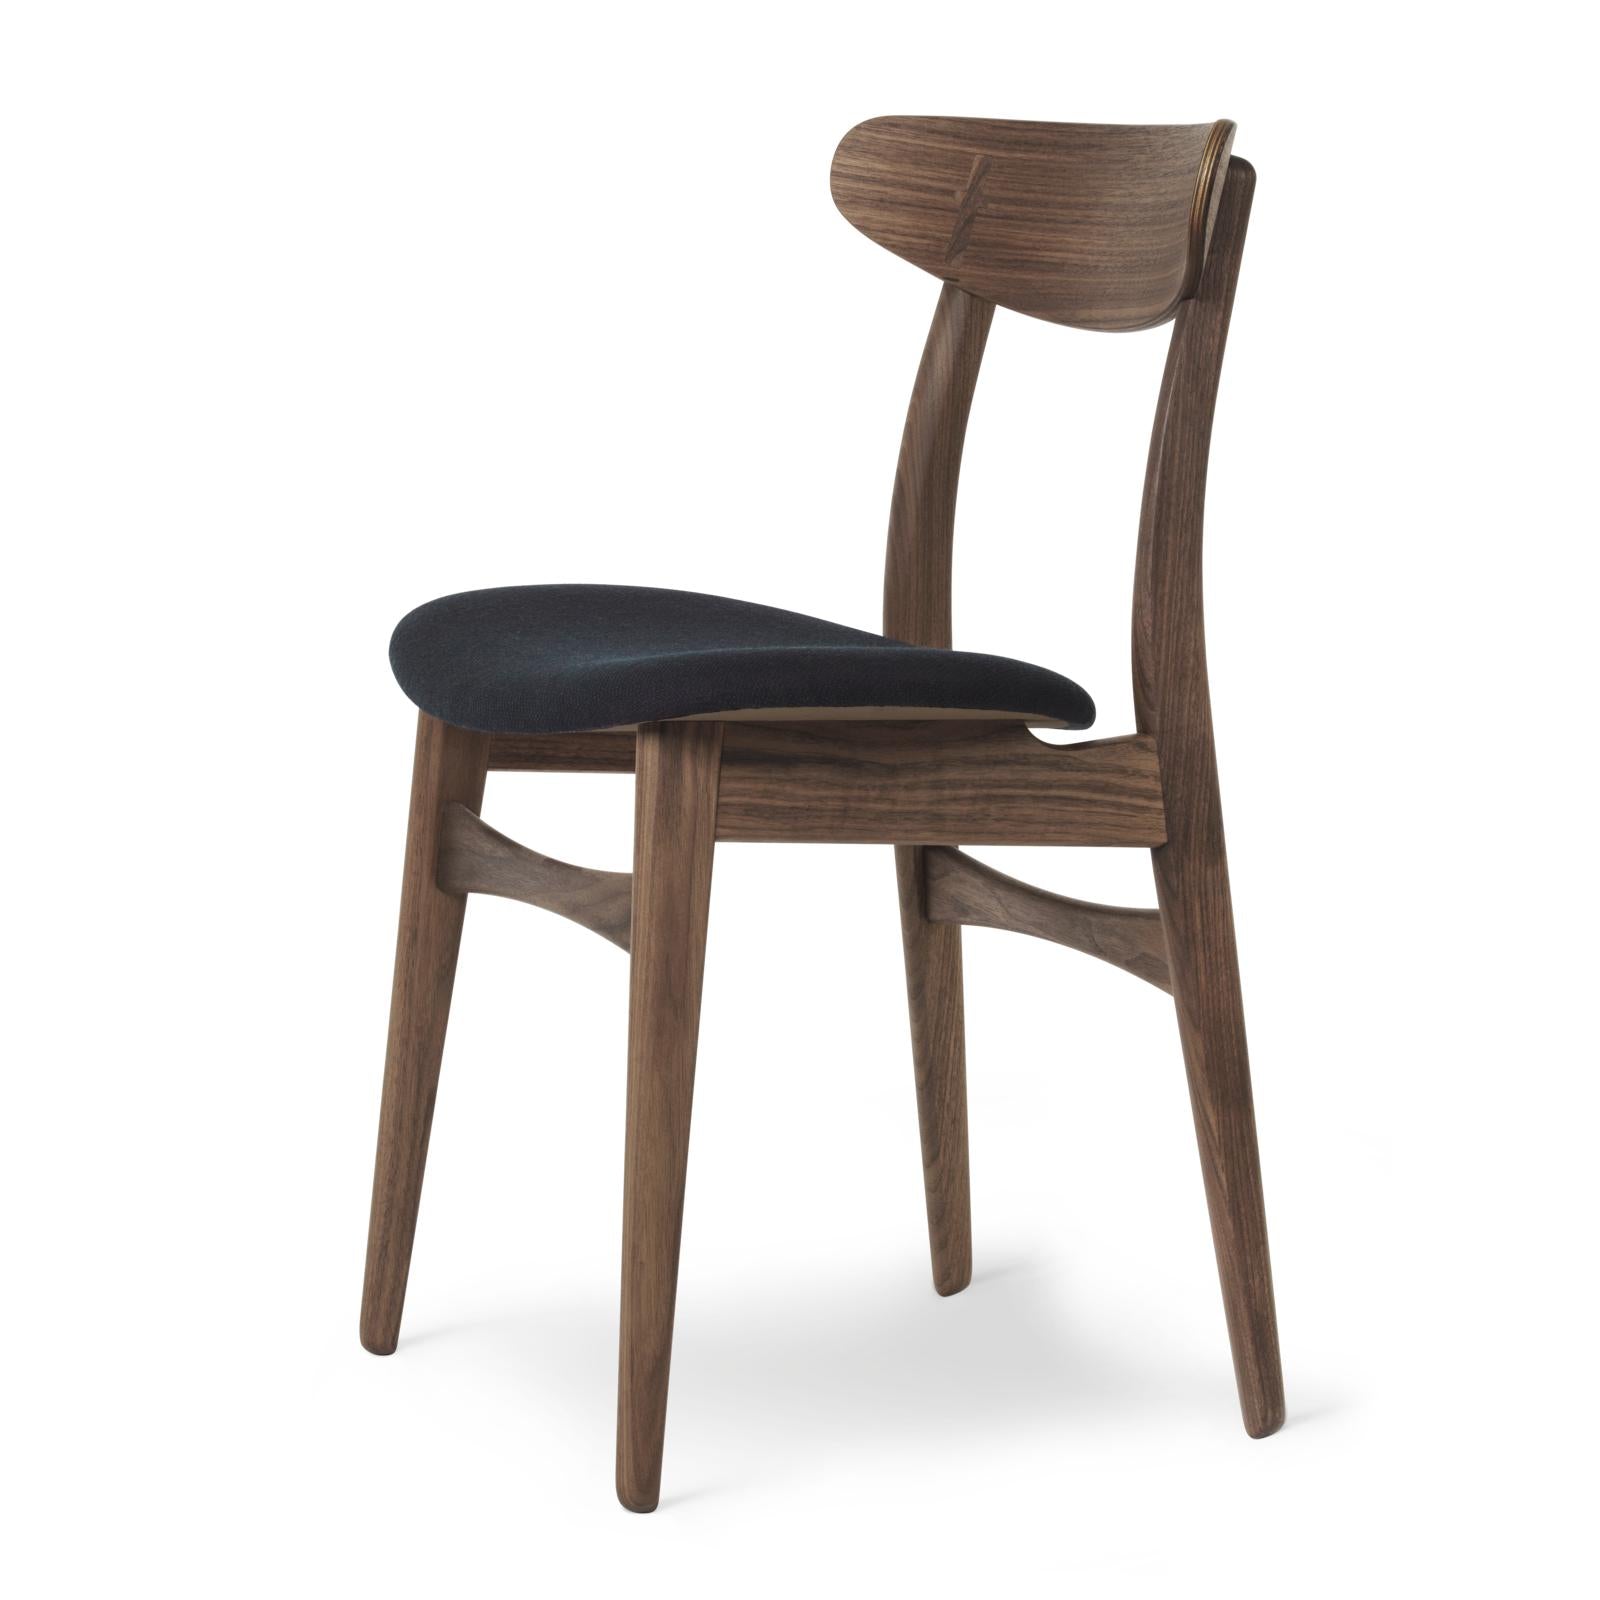 Carl Hansen Ch30p Chair, Oiled Walnut, Black Fabric